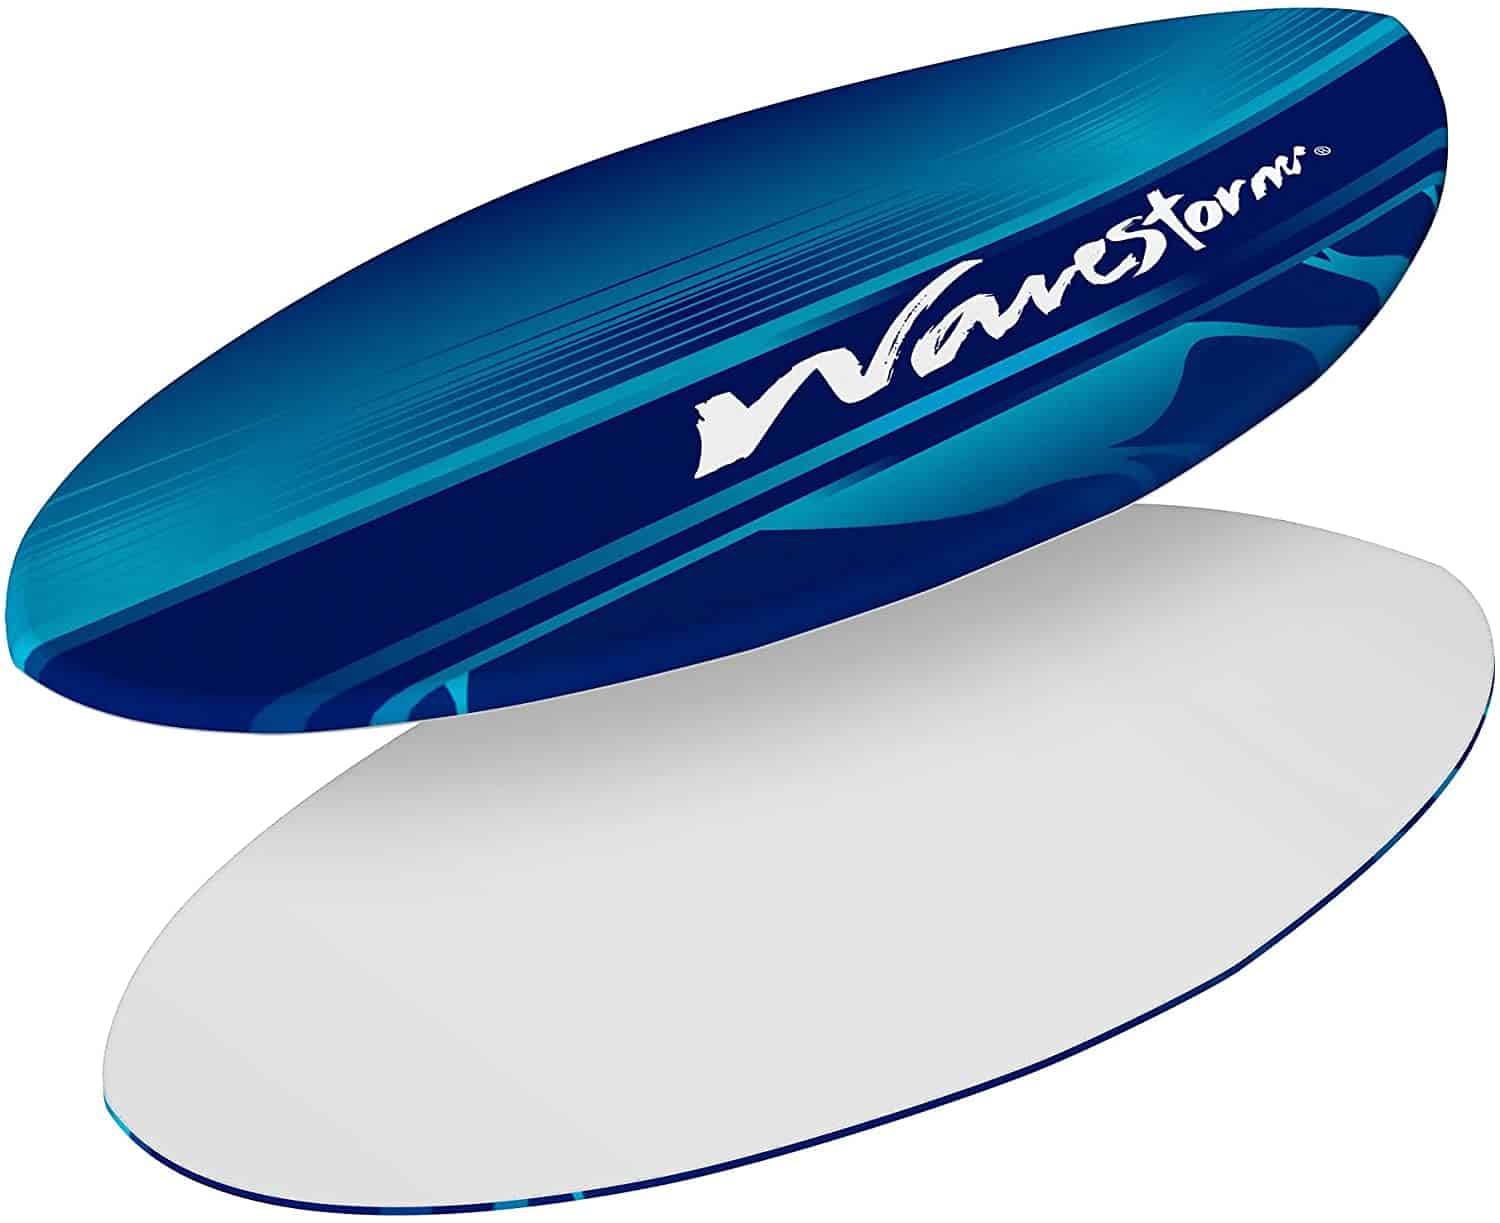 Best foam core skimboard & best for wakesurfing- Wavestorm Foam 48